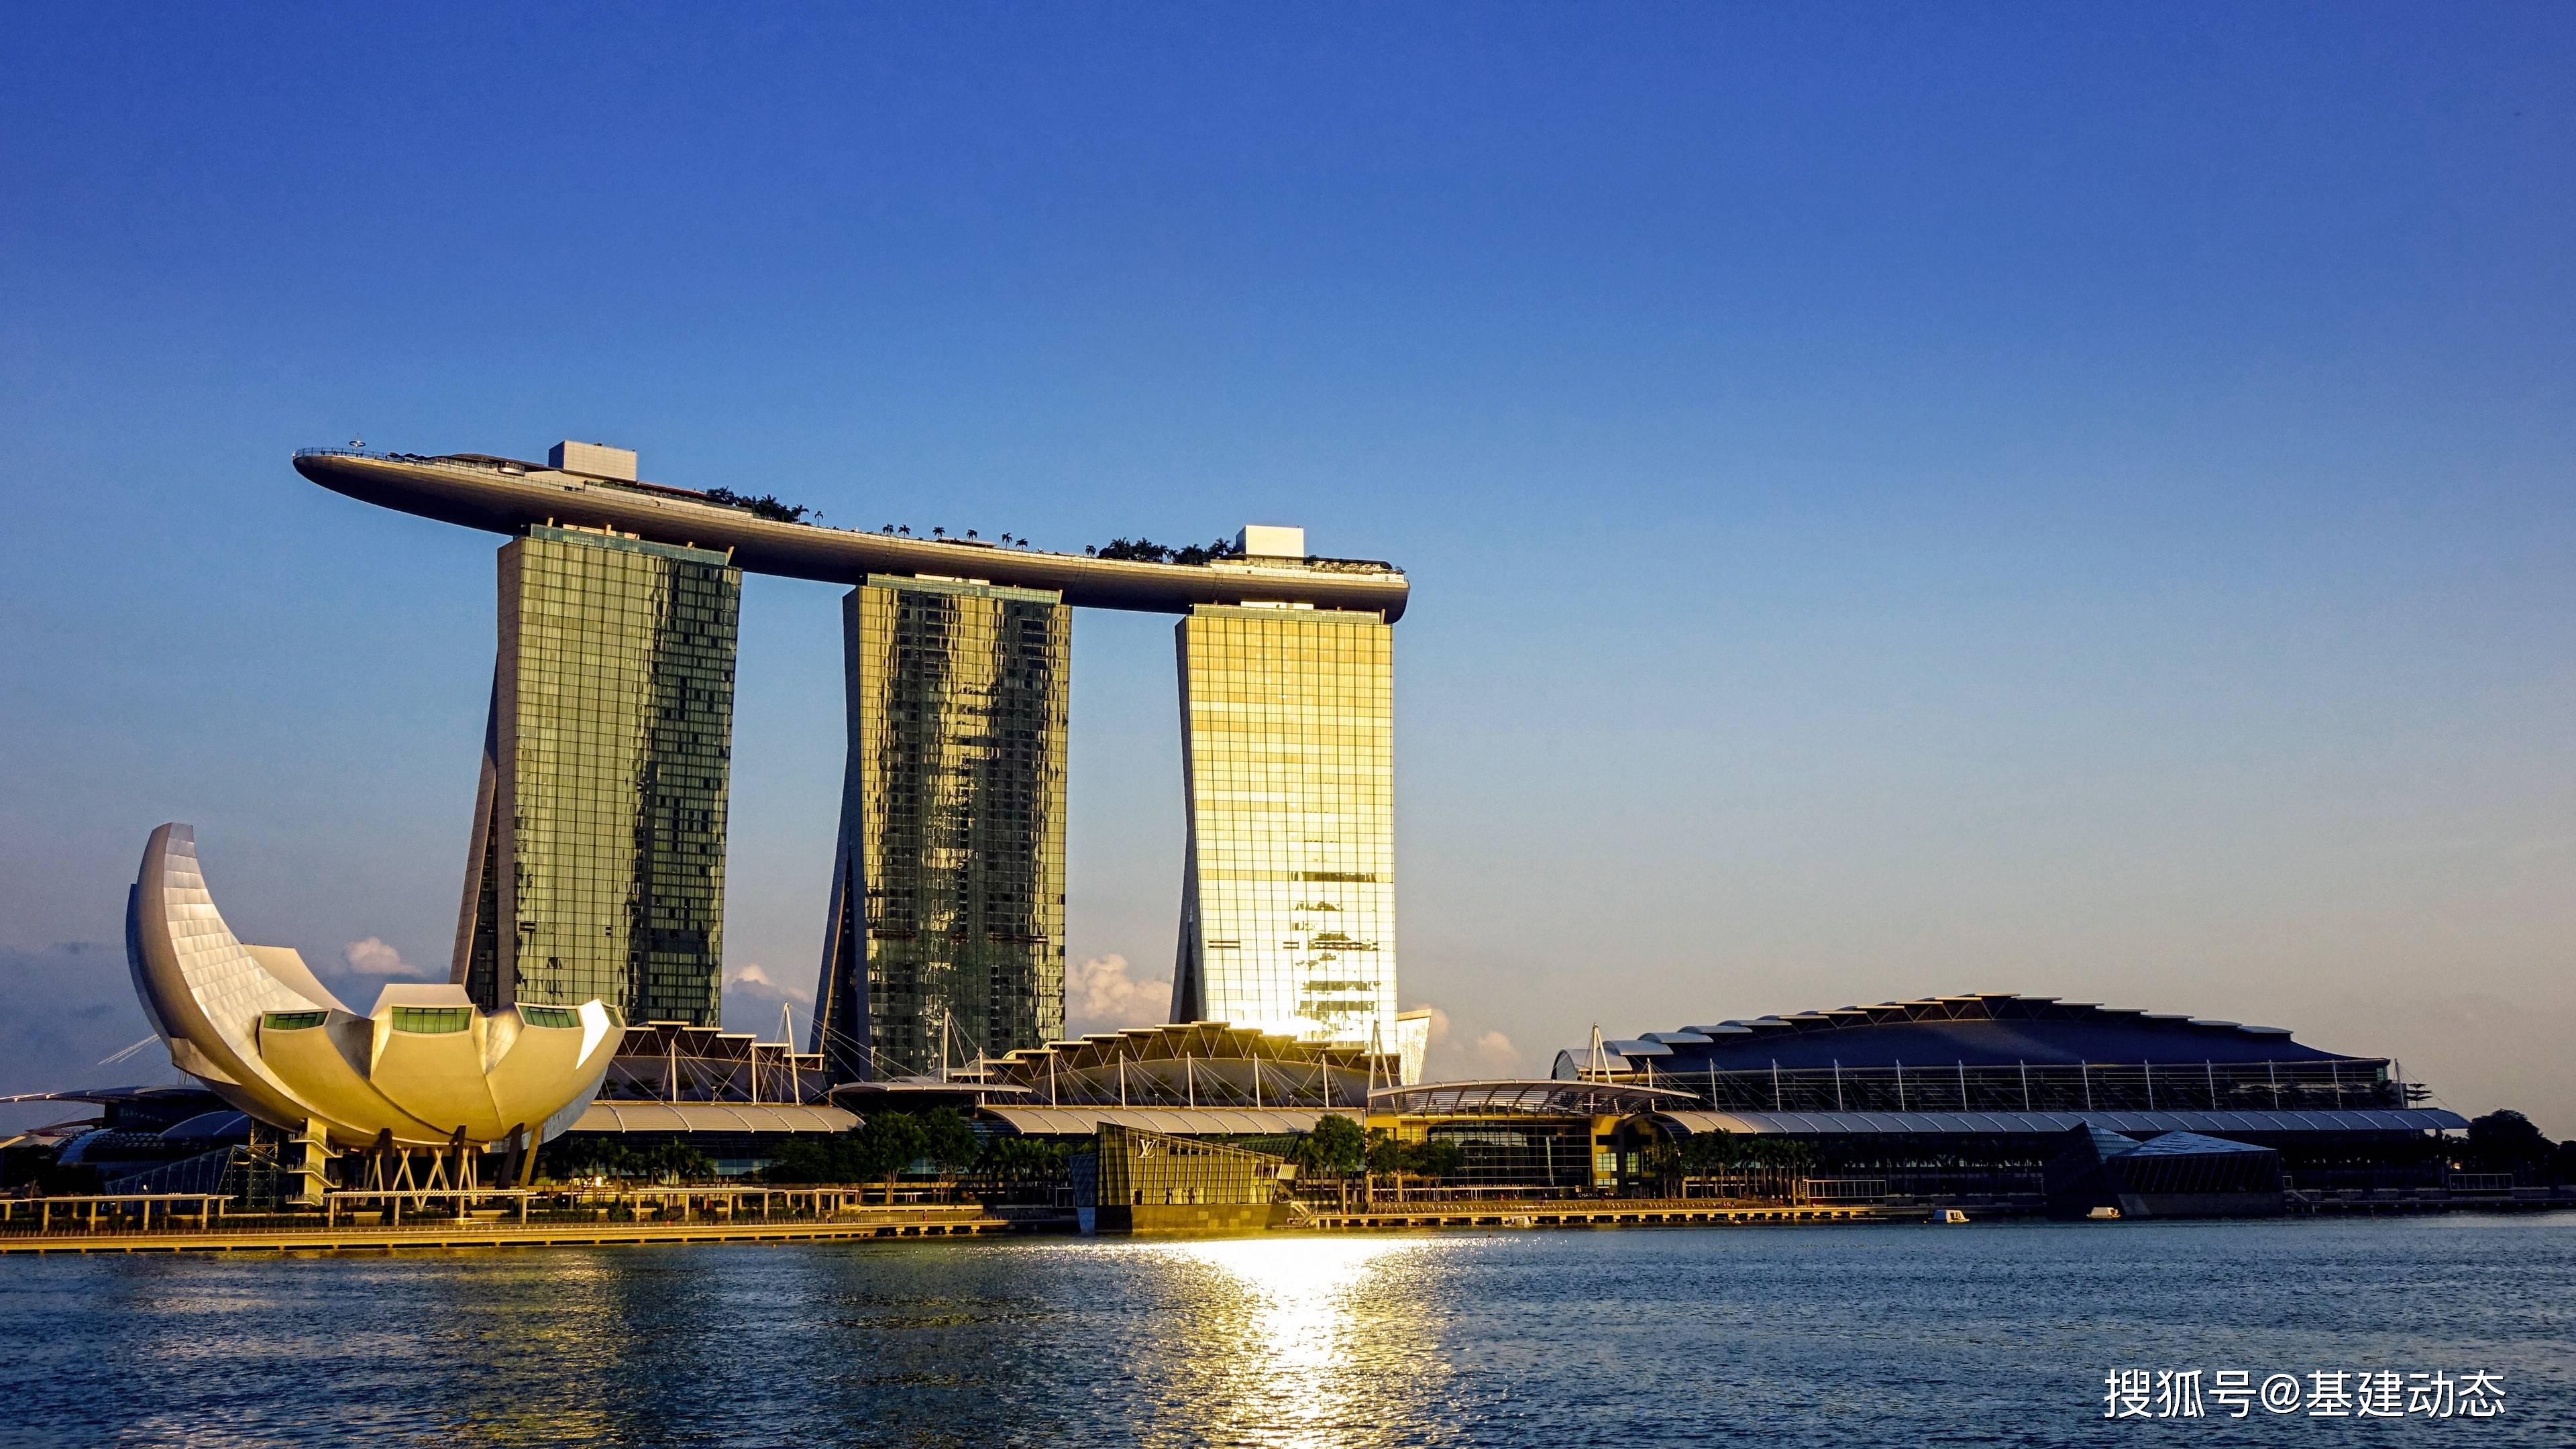 原创全球最美50大建筑揭晓,新加坡滨海湾金沙酒店荣获第二名